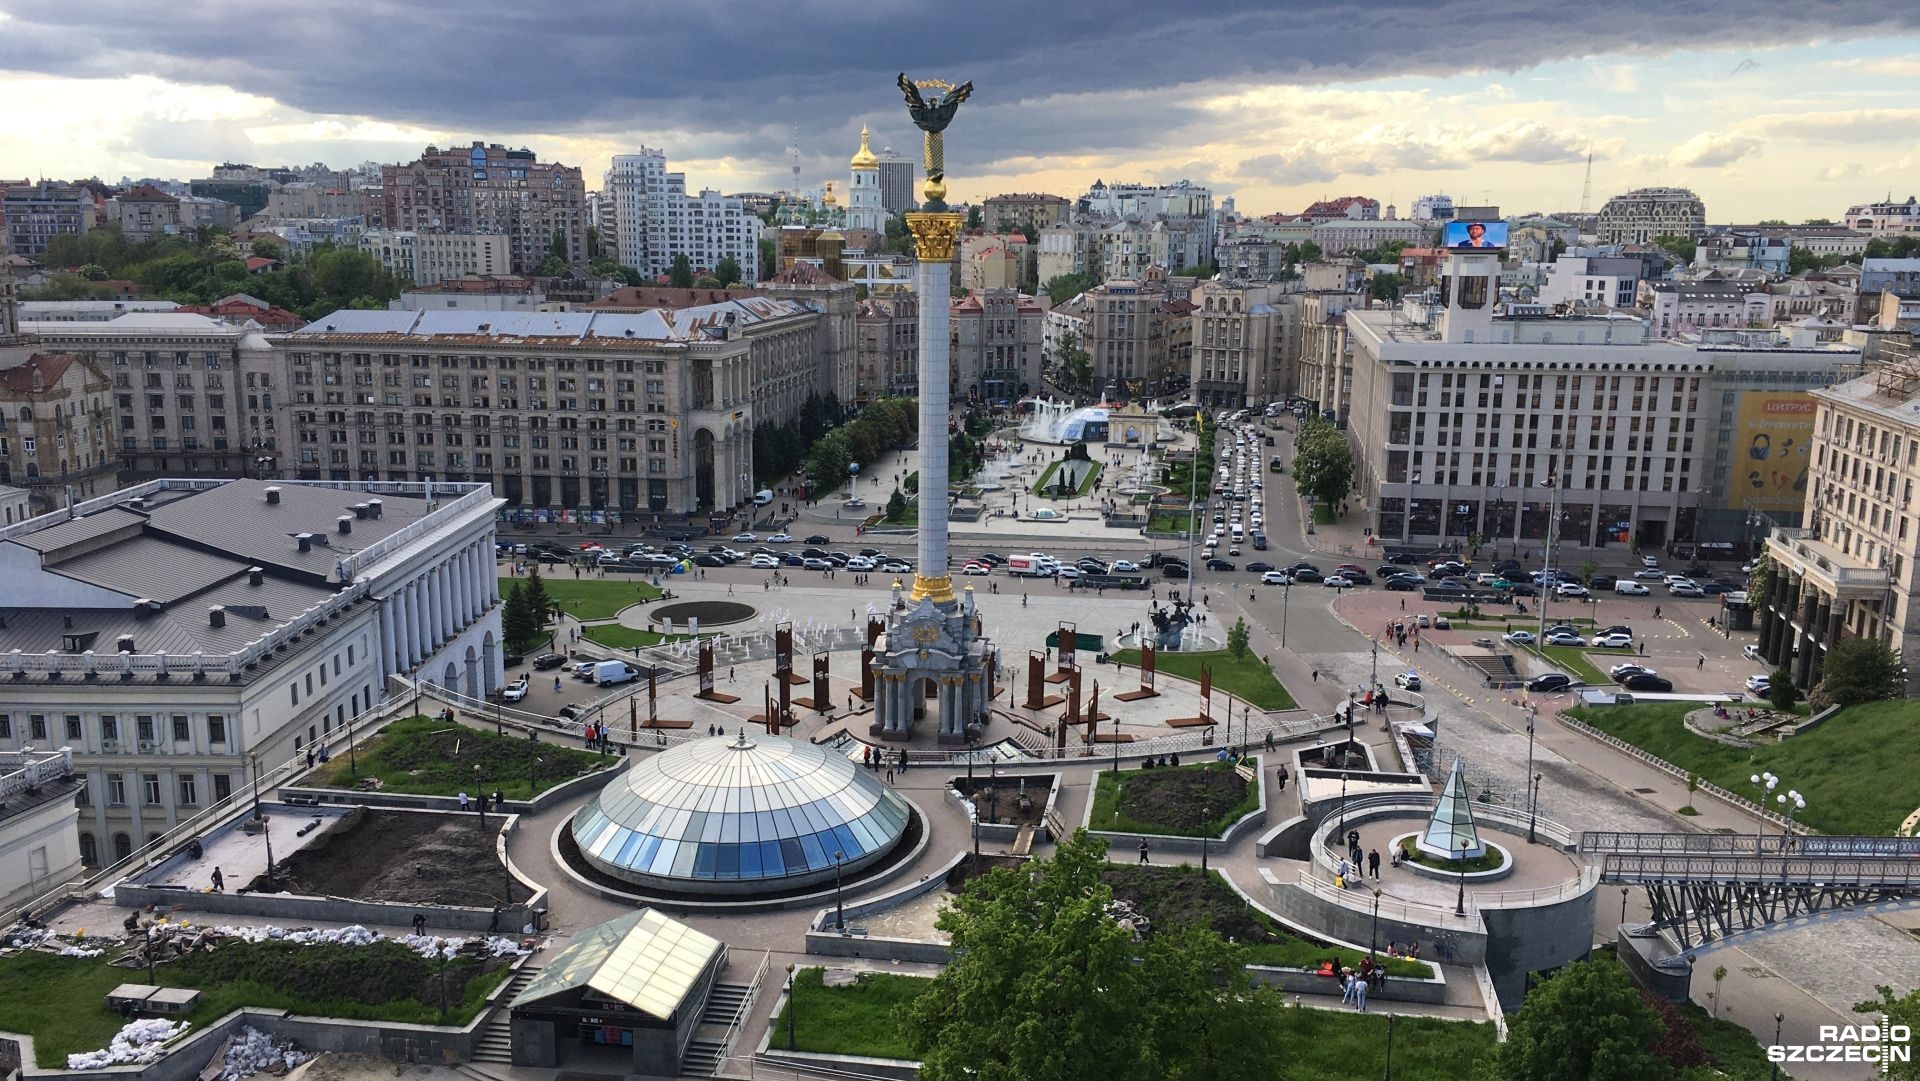 W Kijowie zmieniono ponad 30 nazw ulic związanych z rosyjską geografią i kulturą, a także nawiązujących do radzieckiej tradycji. To kolejne tego typu przemianowanie nazw ulic w ukraińskiej stolicy.